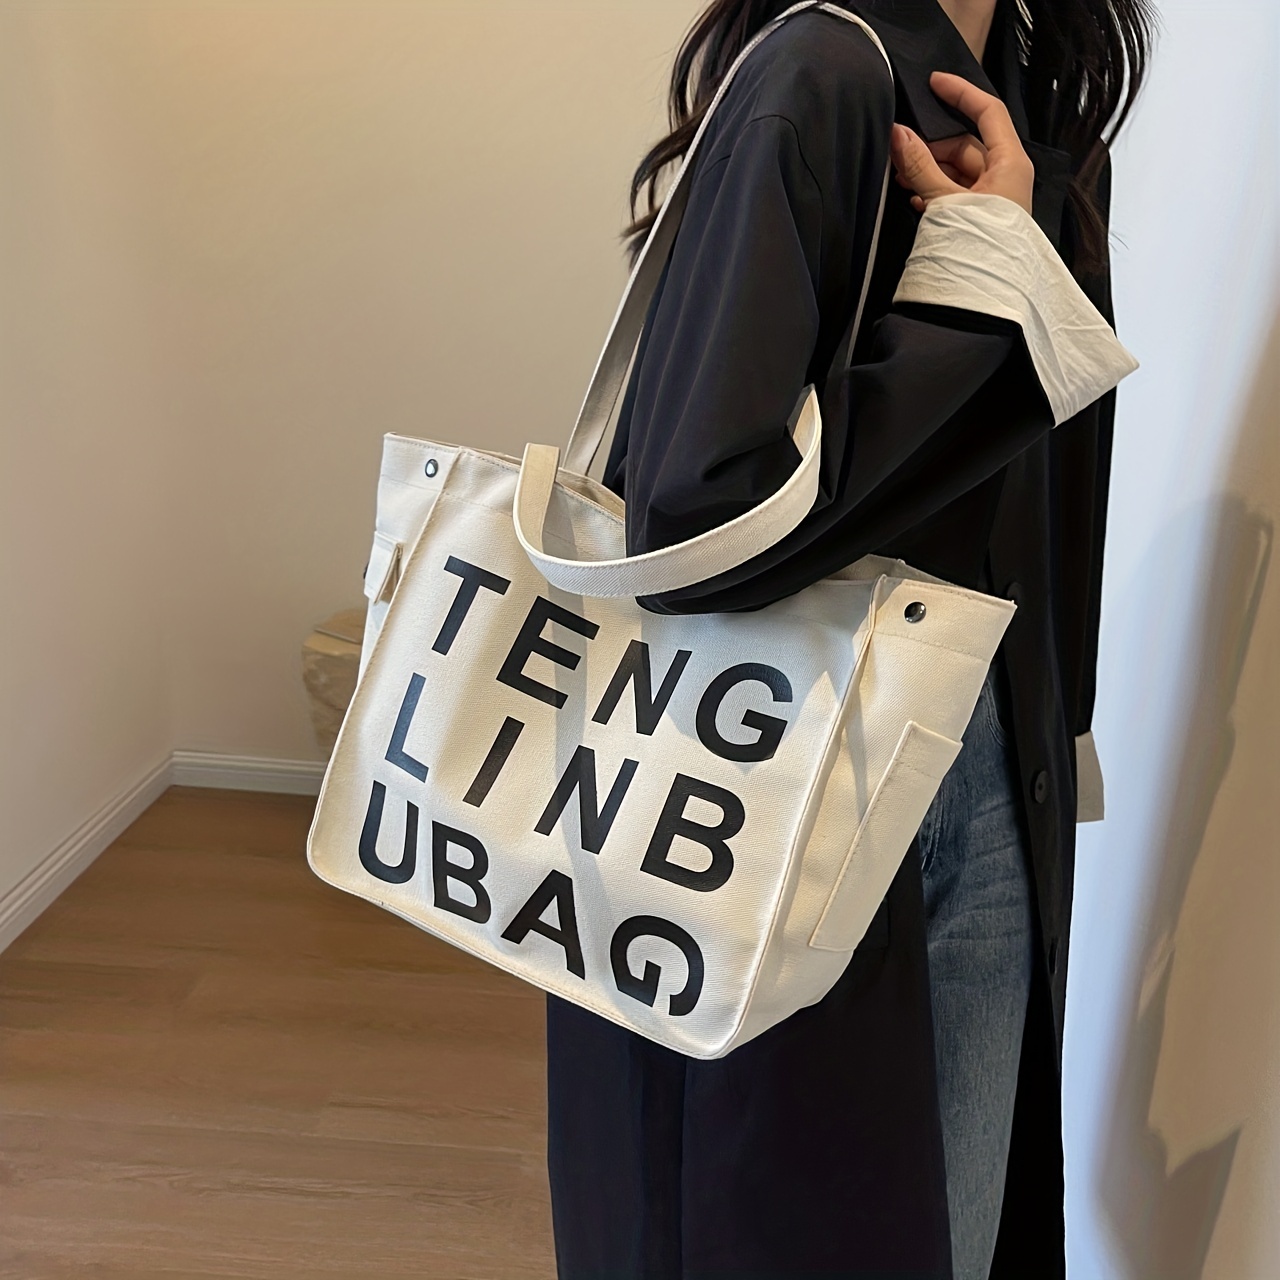 Retro Letter Print Tote Bag Large Capacity Shoulder Bag Perfect